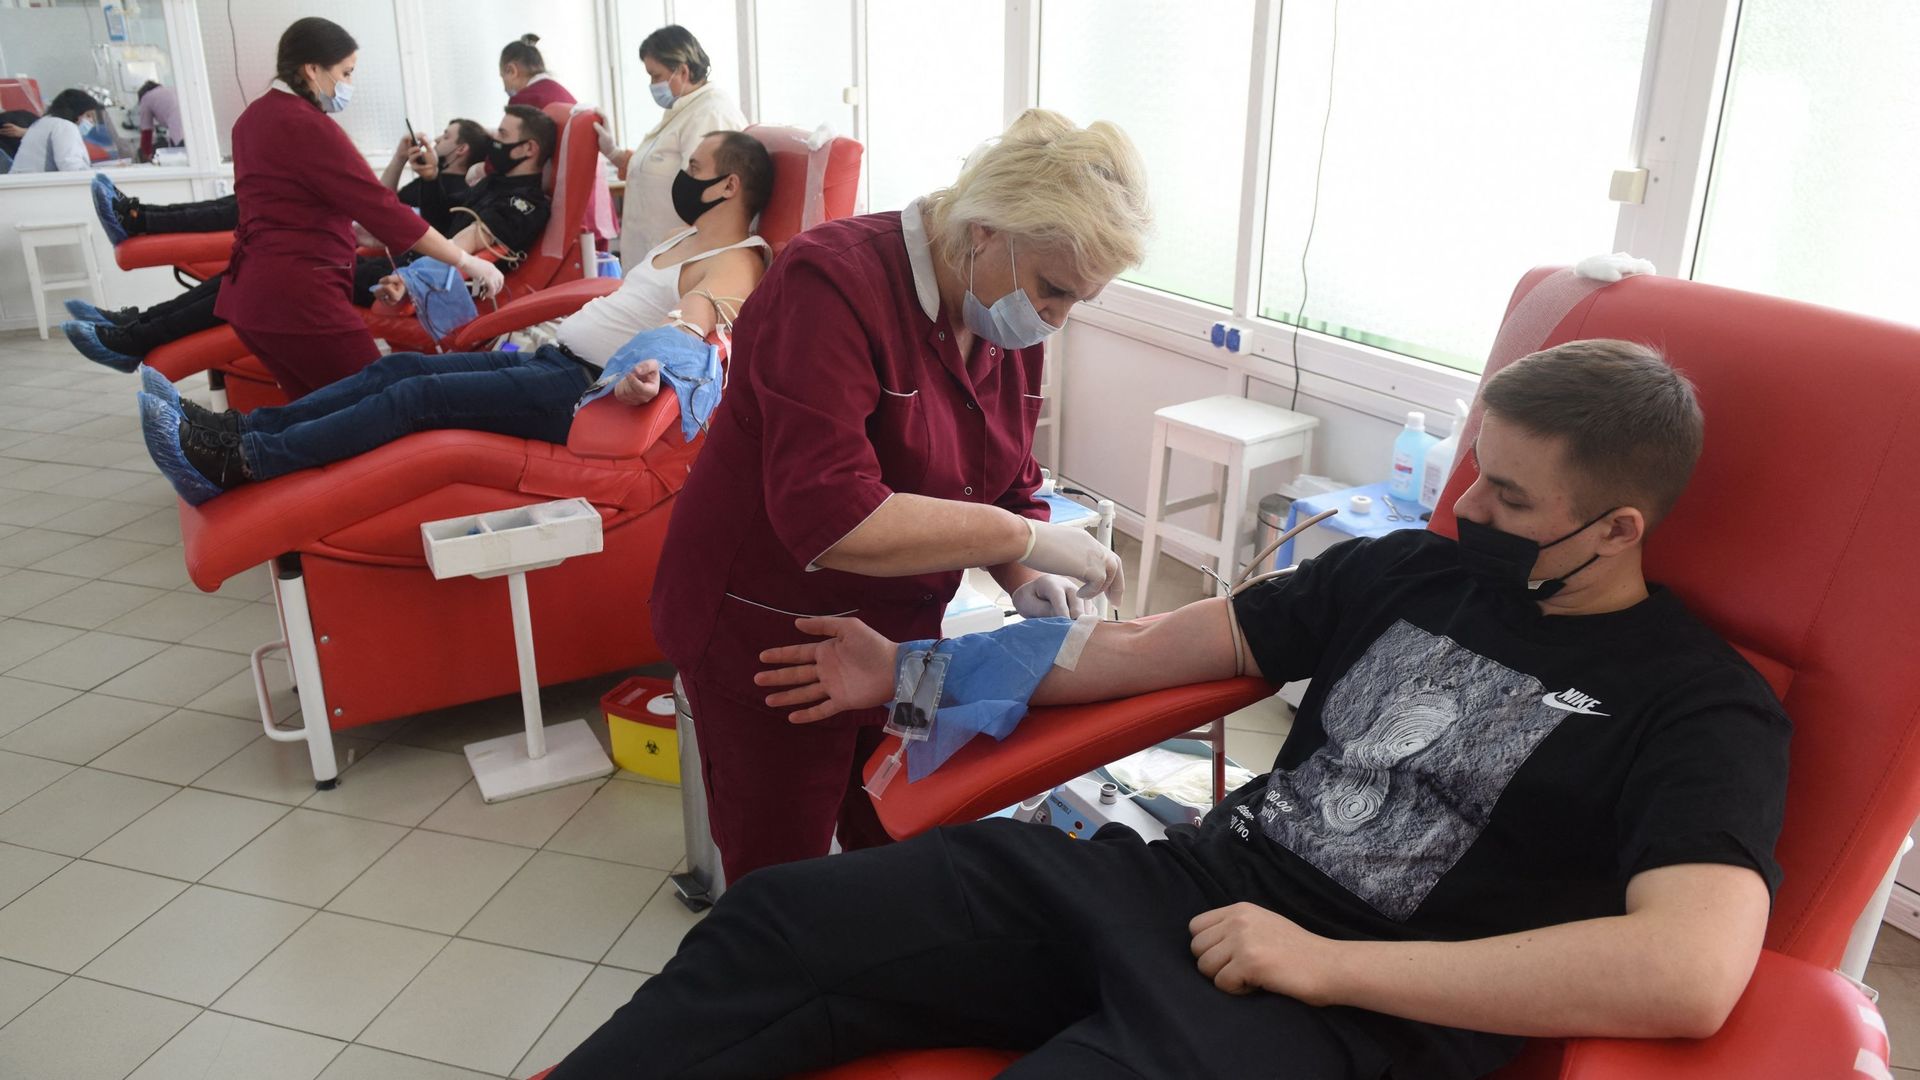 Des personnes donnent leur sang pour l'armée au centre de service du sang de la ville de Lviv, dans l'ouest de l'Ukraine, le 25 février 2022.